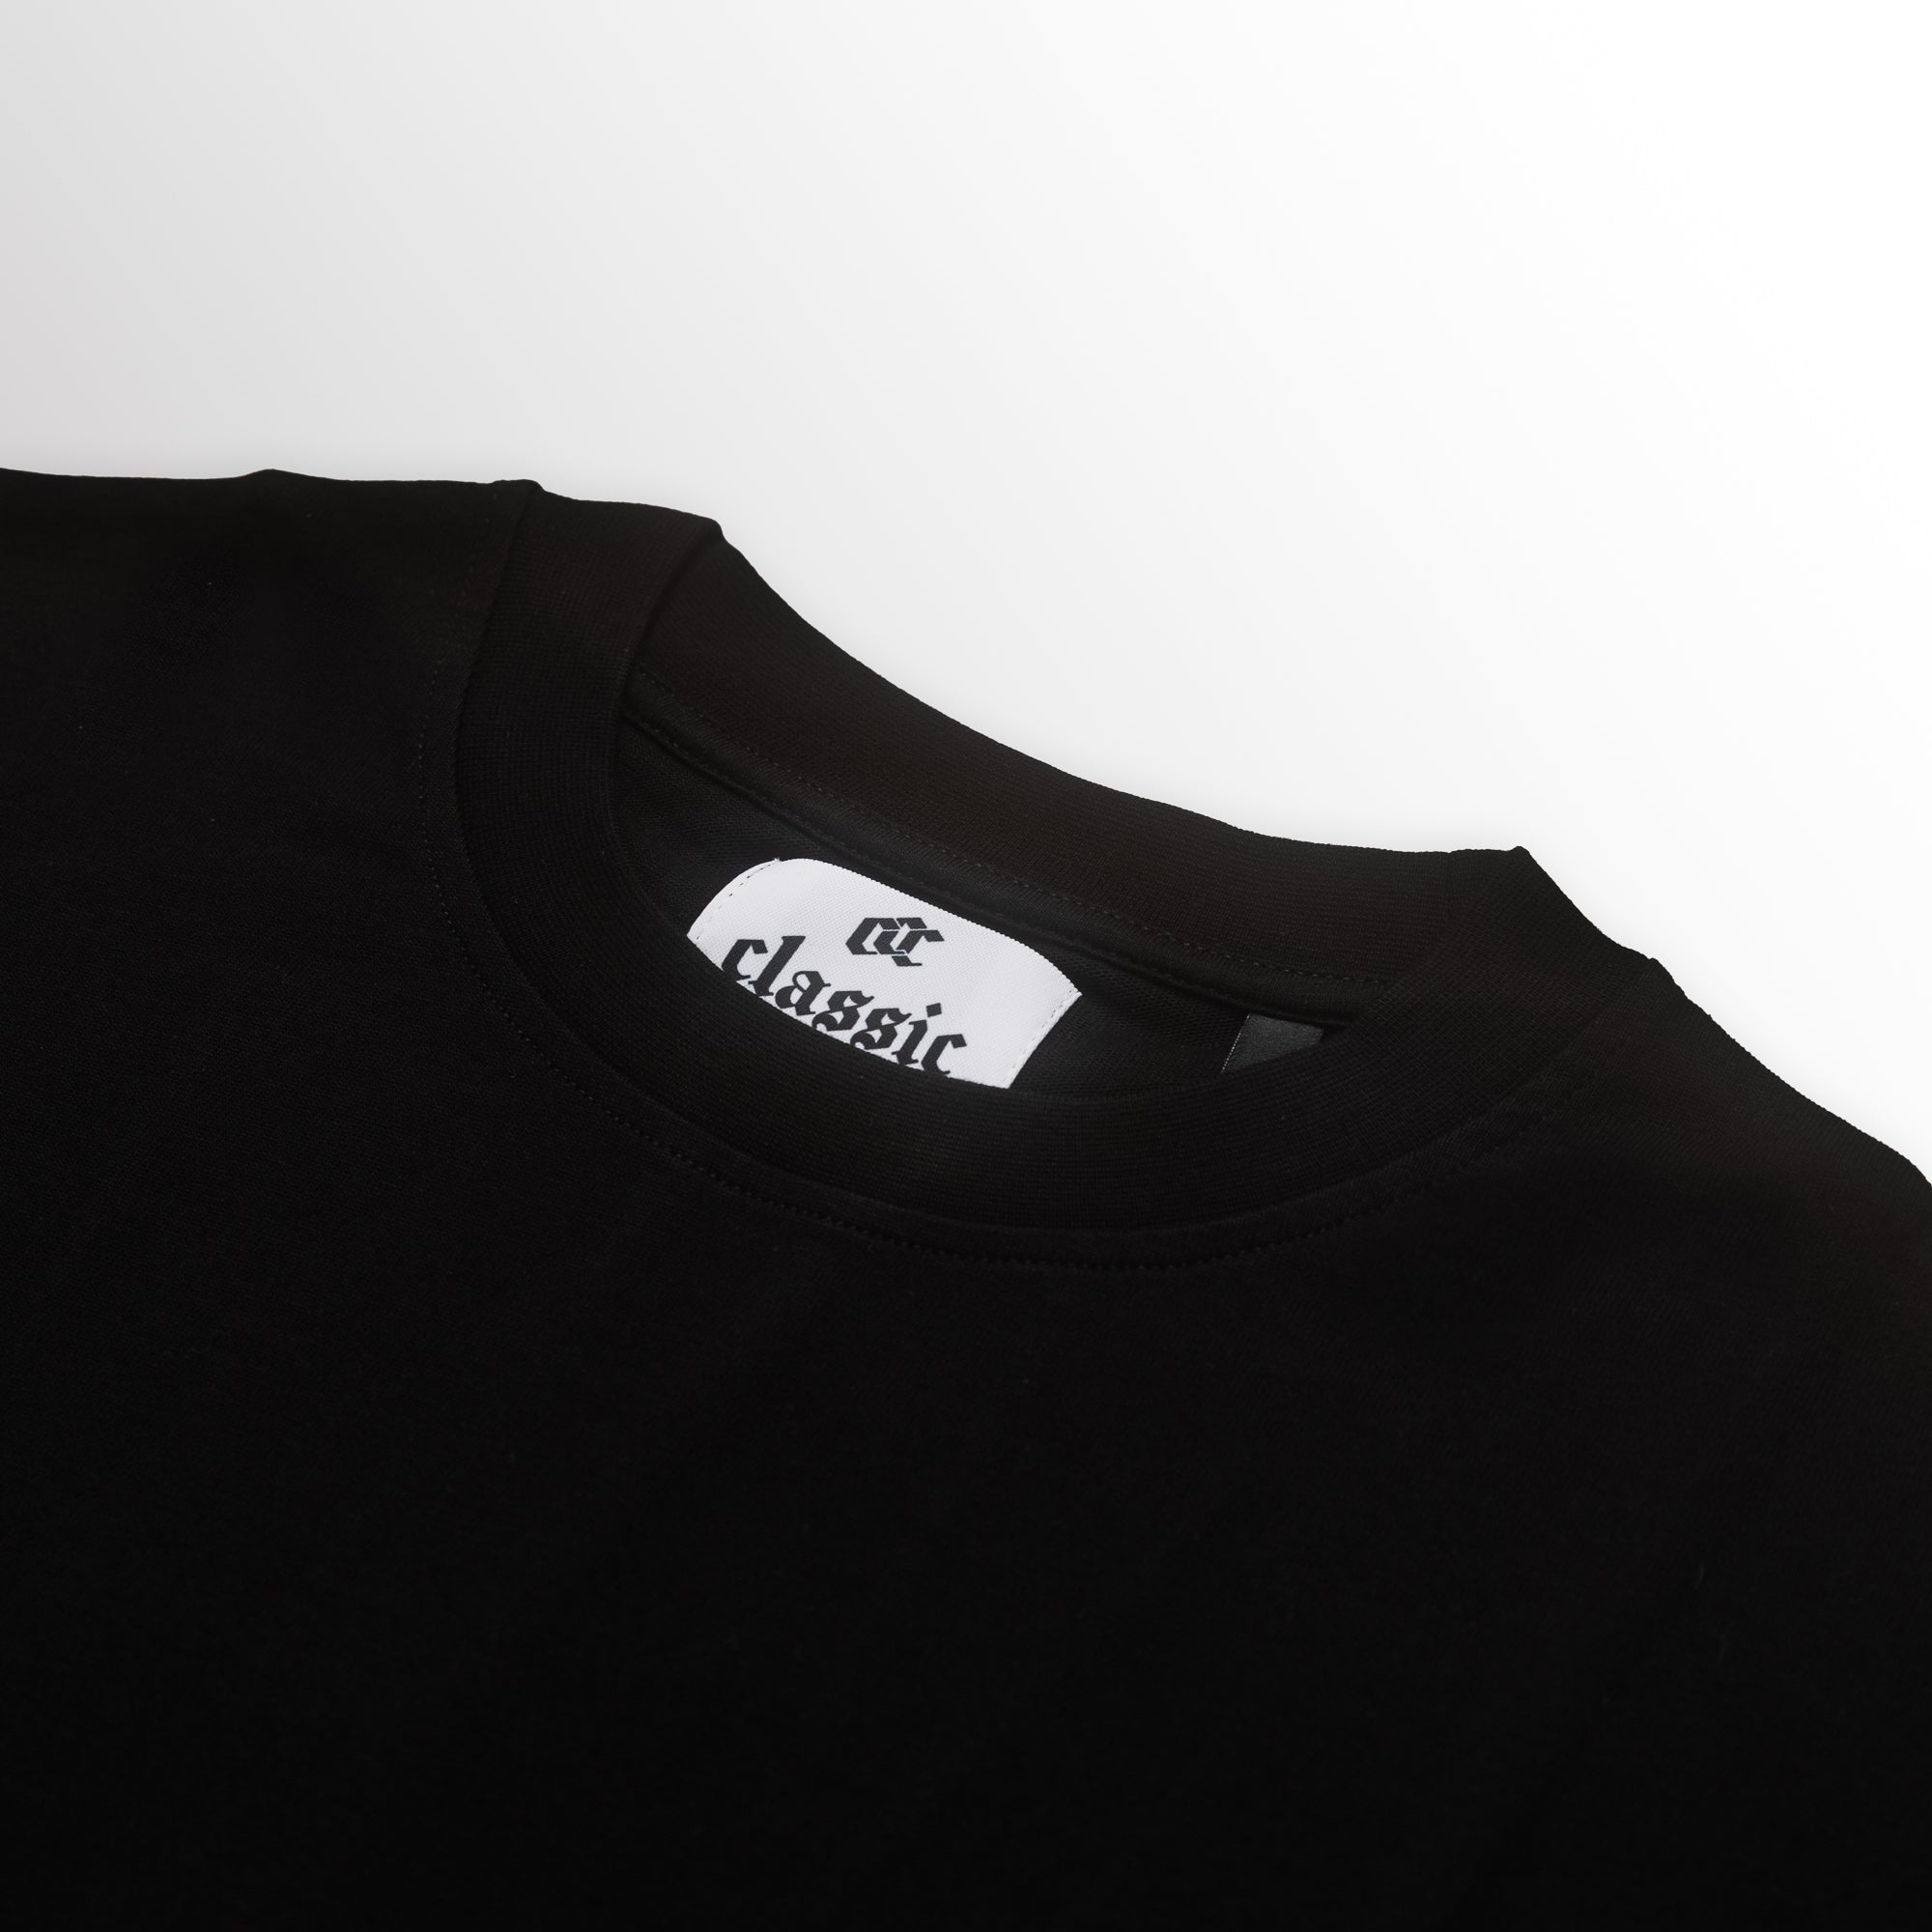 Short Sleeve Black T-Shirt